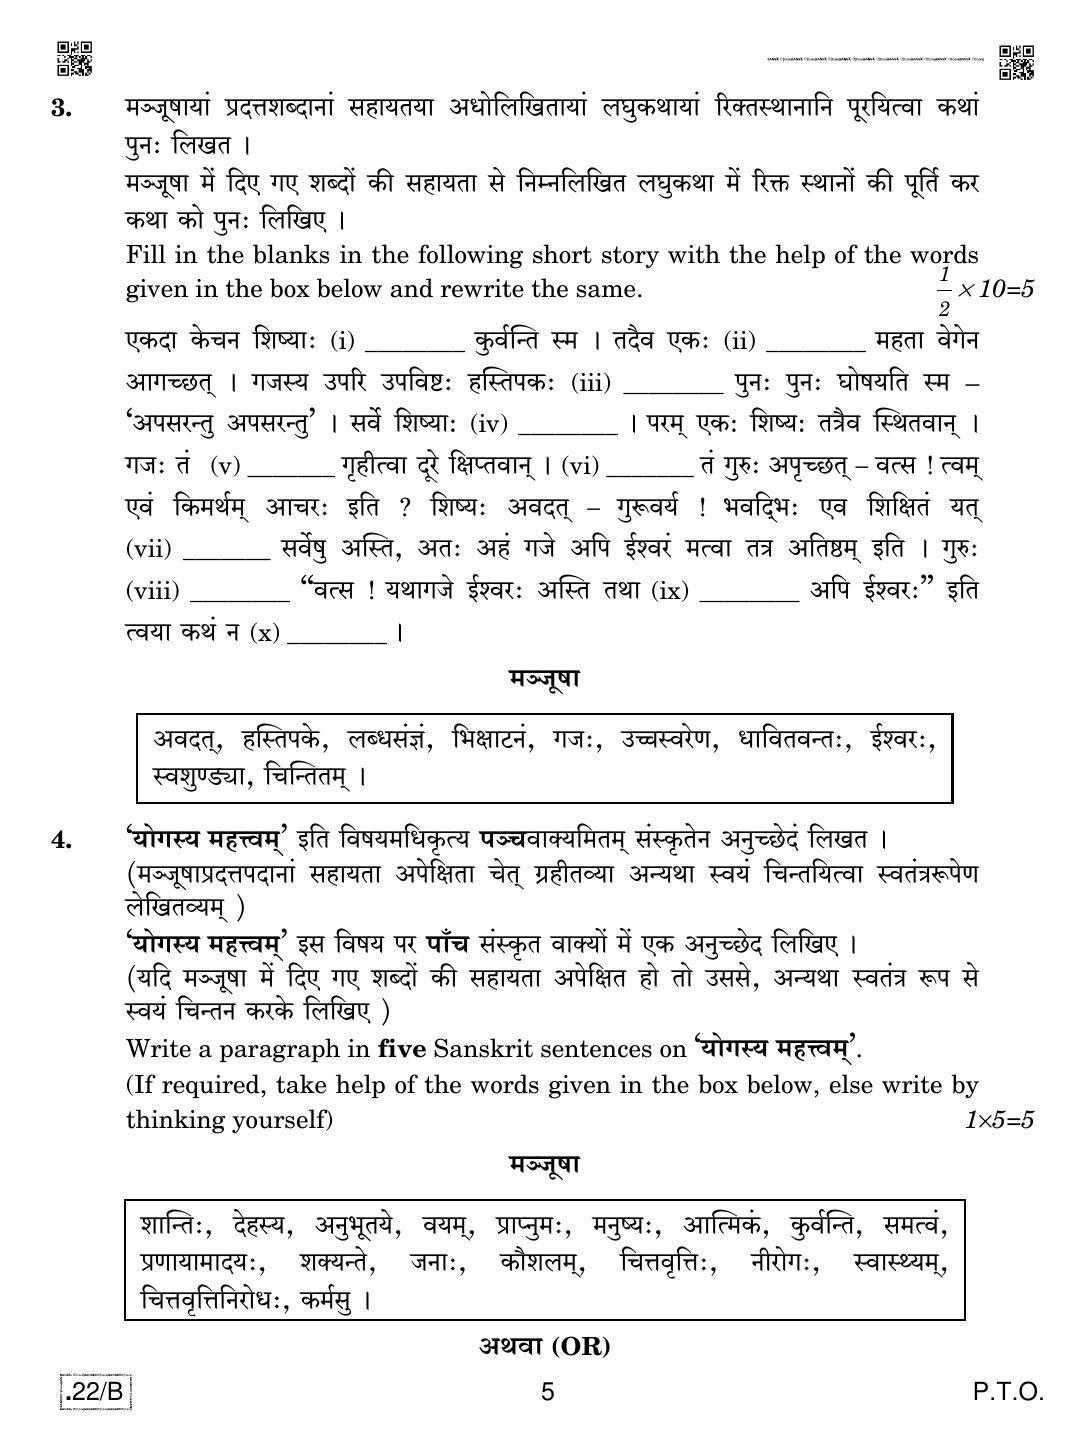 CBSE Class 12 Sanskrit Core 2020 Compartment Question Paper - Page 5